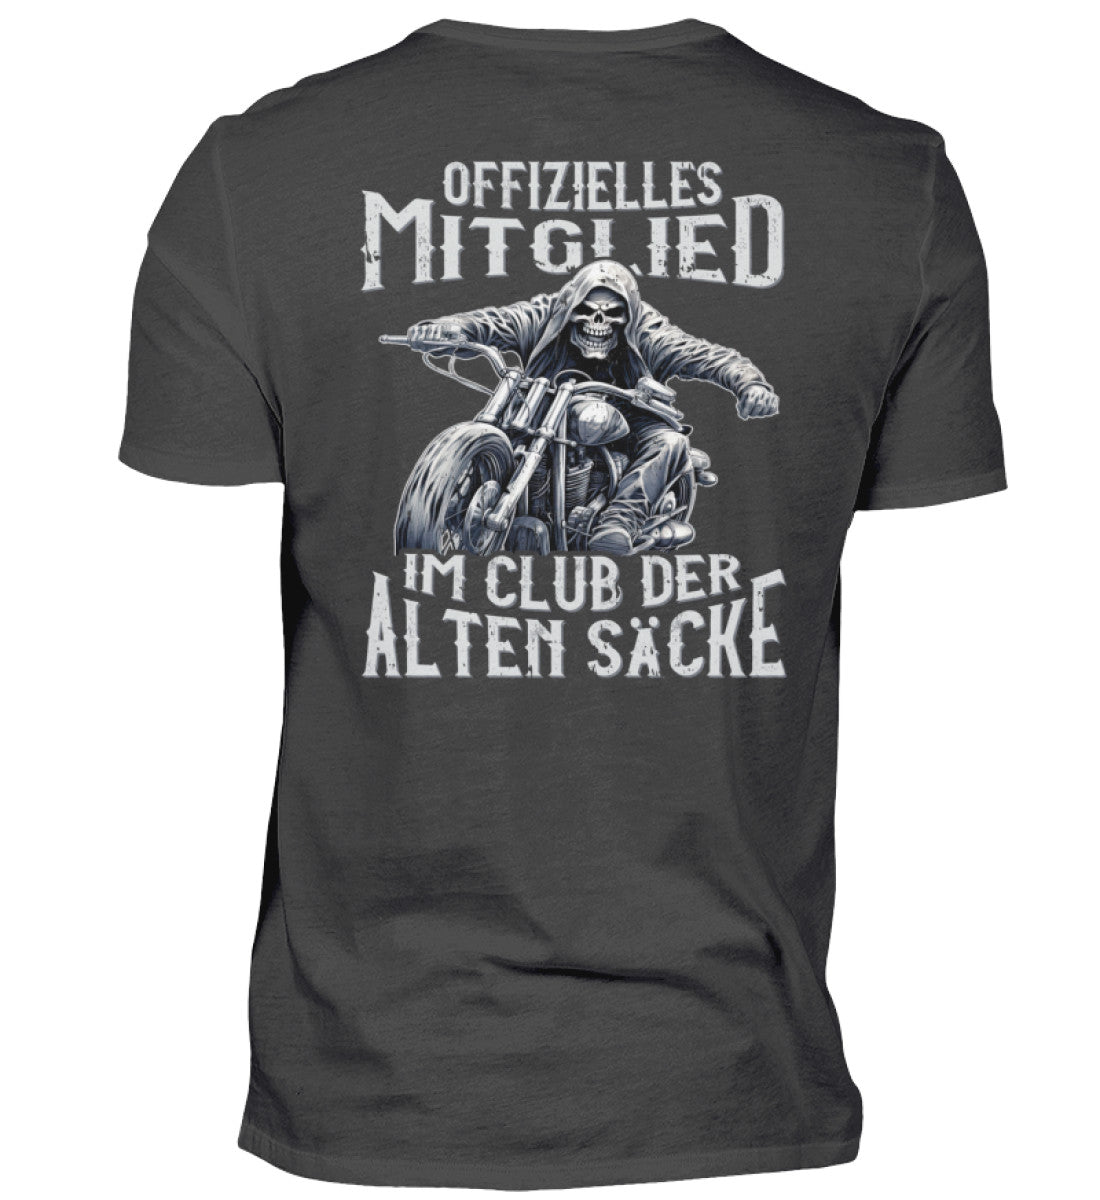 Ein Biker T-Shirt mit Back Print für Motorradfahrer von Wingbikers mit dem Aufdruck, Offizielles Mitglied im Club der alten Säcke, in dunkelgrau. 